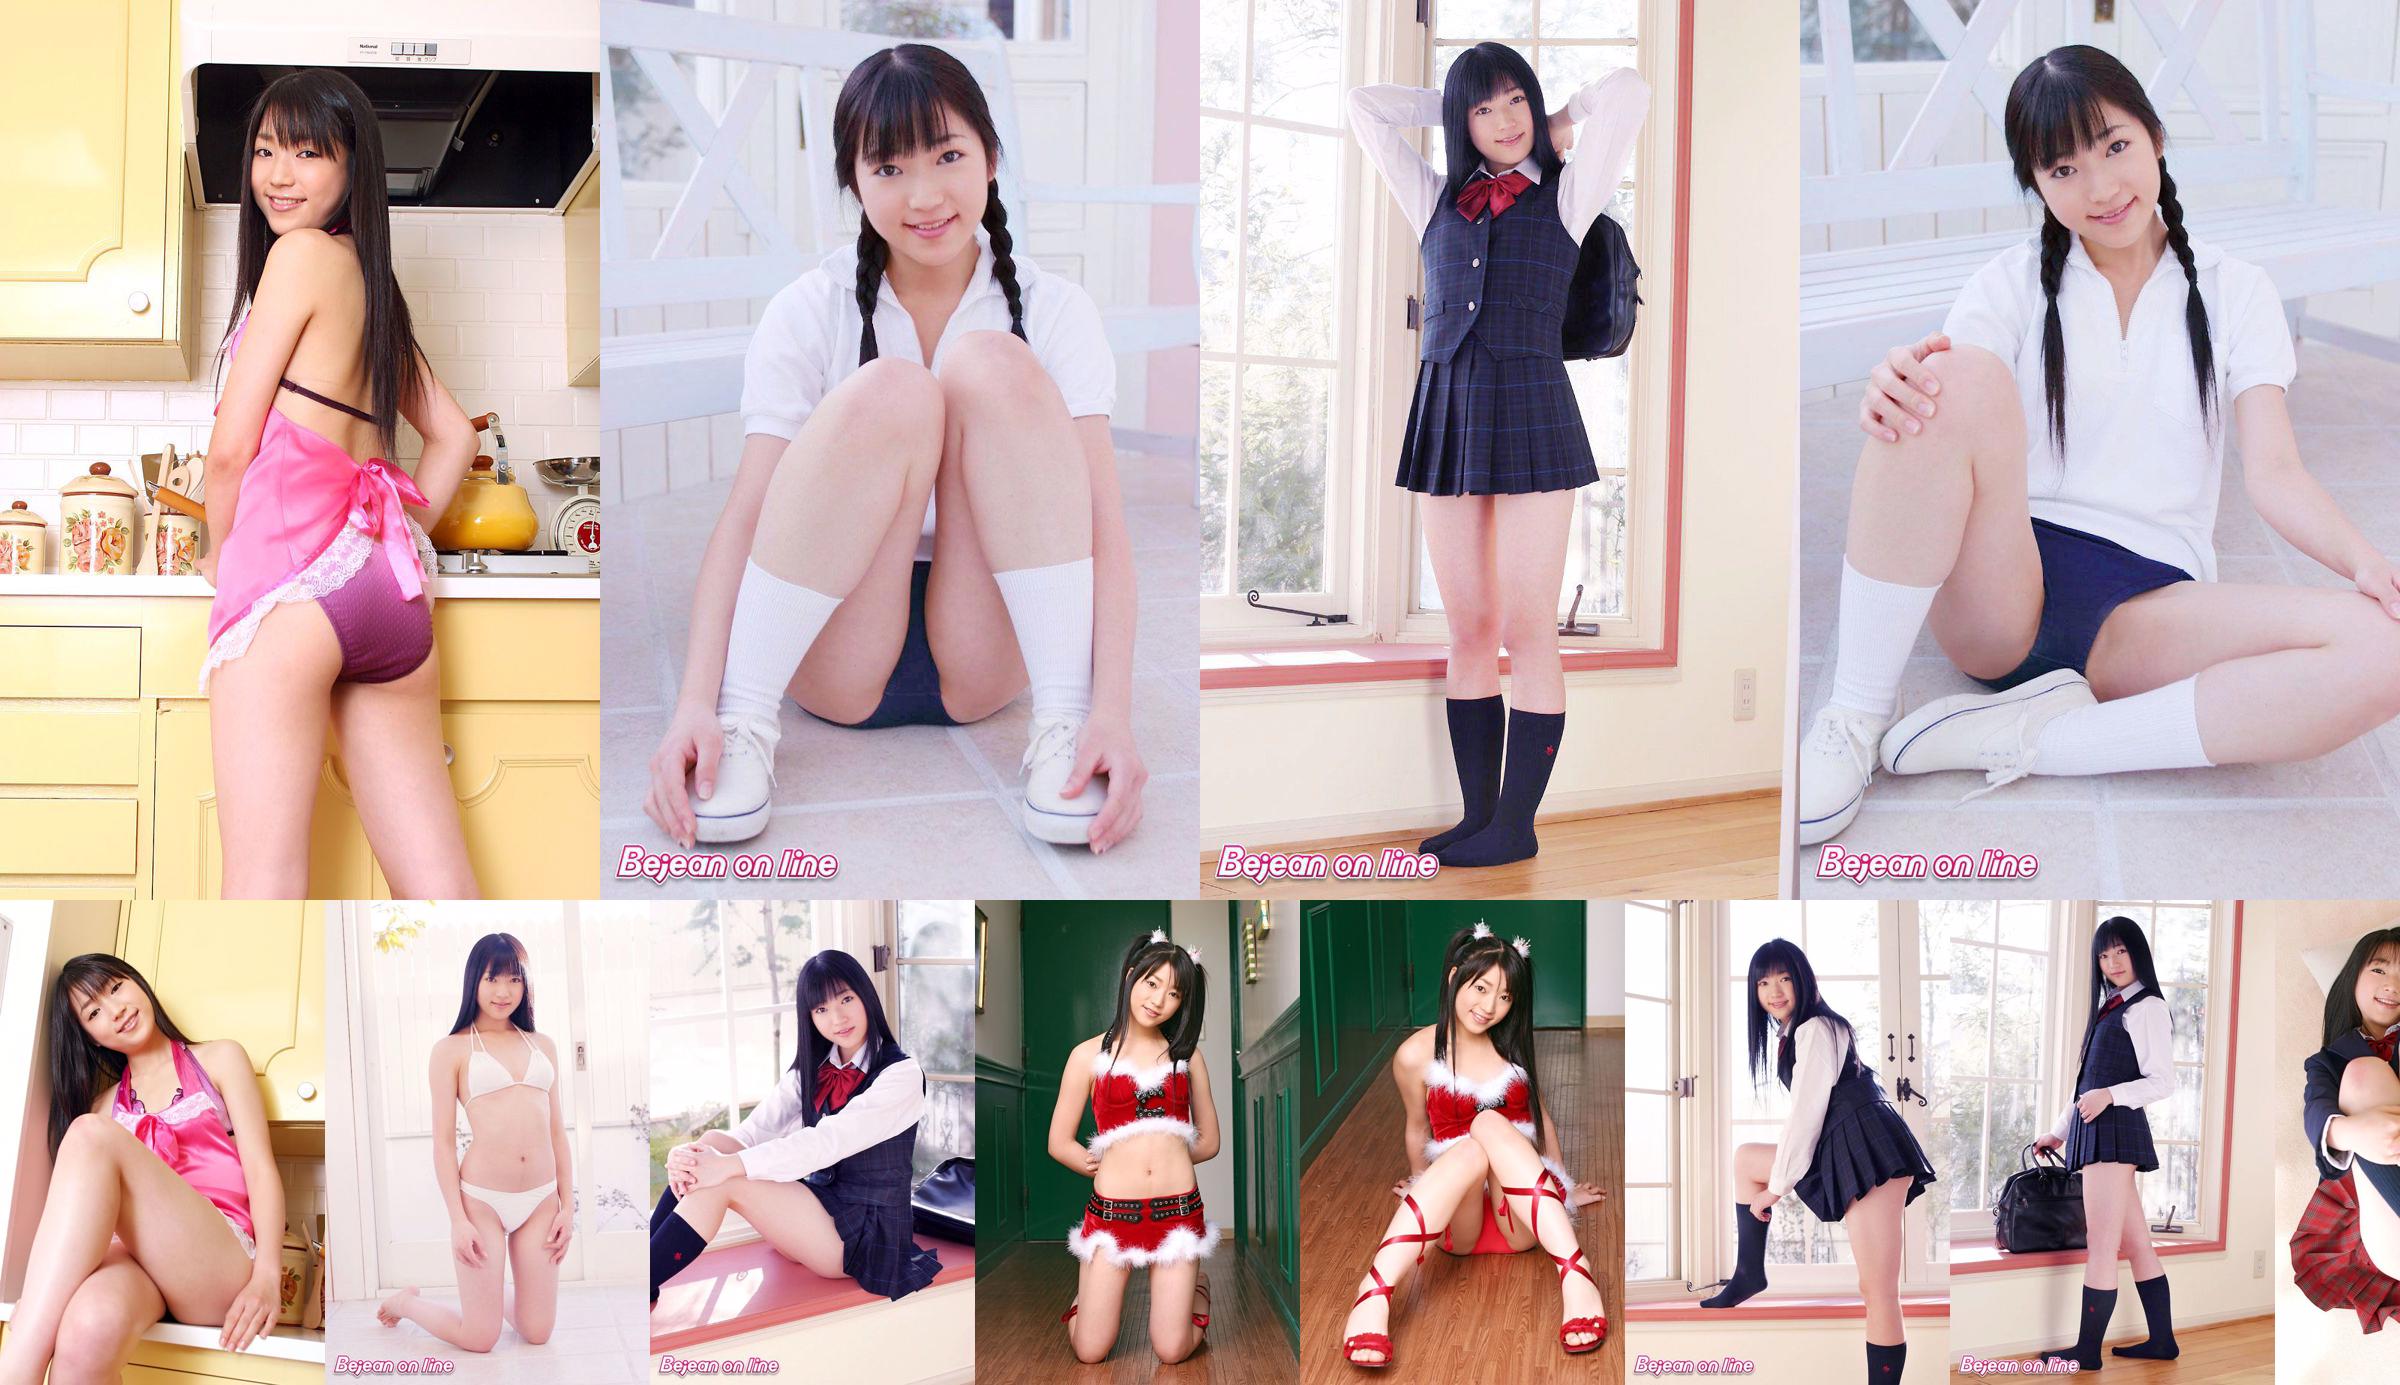 Prywatna szkoła Bejean Girls ’School Shizuka Mizumoto 水 本 し ず か [Bejean On Line] No.d94092 Strona 1